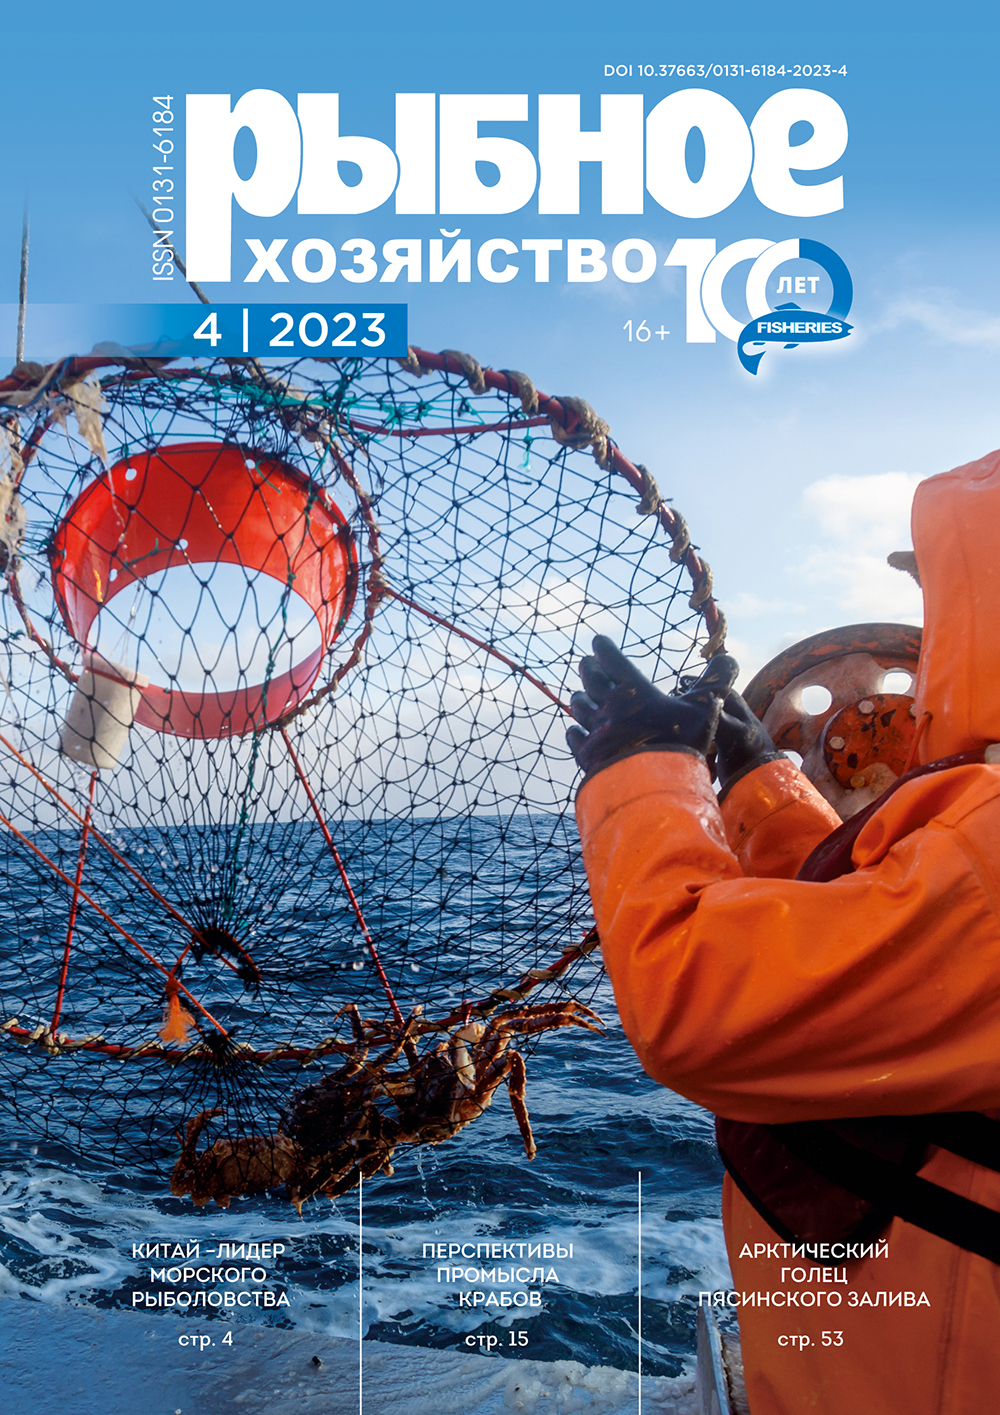             Вклад мореходного института Дальрыбвтуза в рыбохозяйственное образование
    